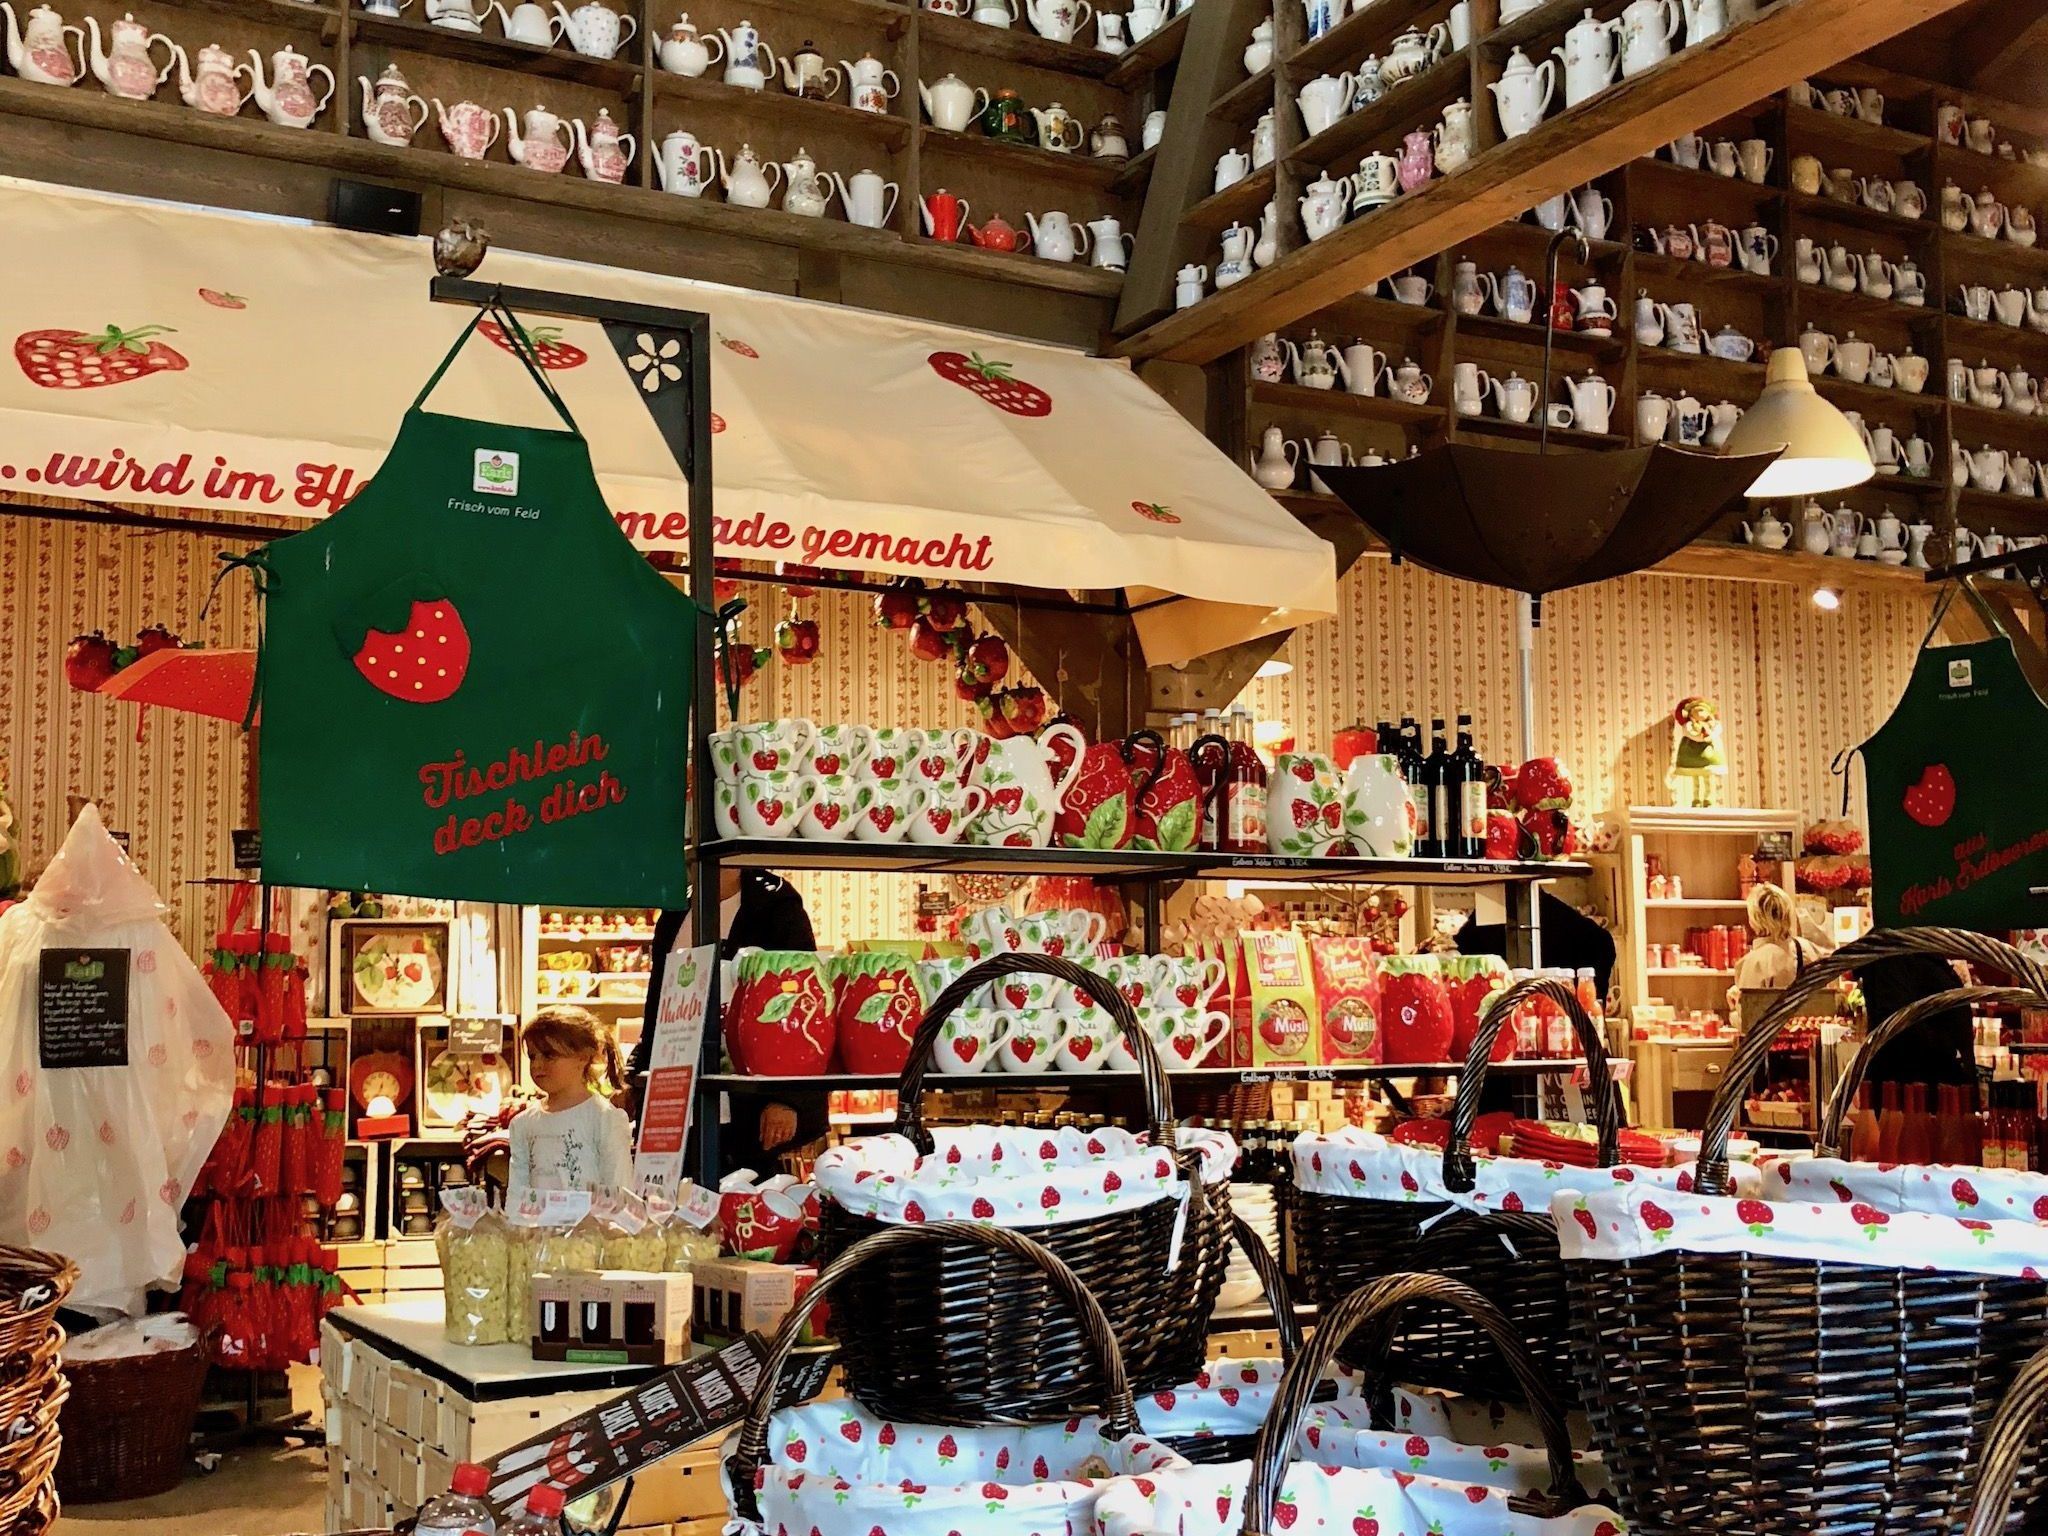 Karls aardbeienboerderij in Warnsdorf is echt een bezoek waard - de toegang is gratis! Foto: Sascha Tegtmeyer